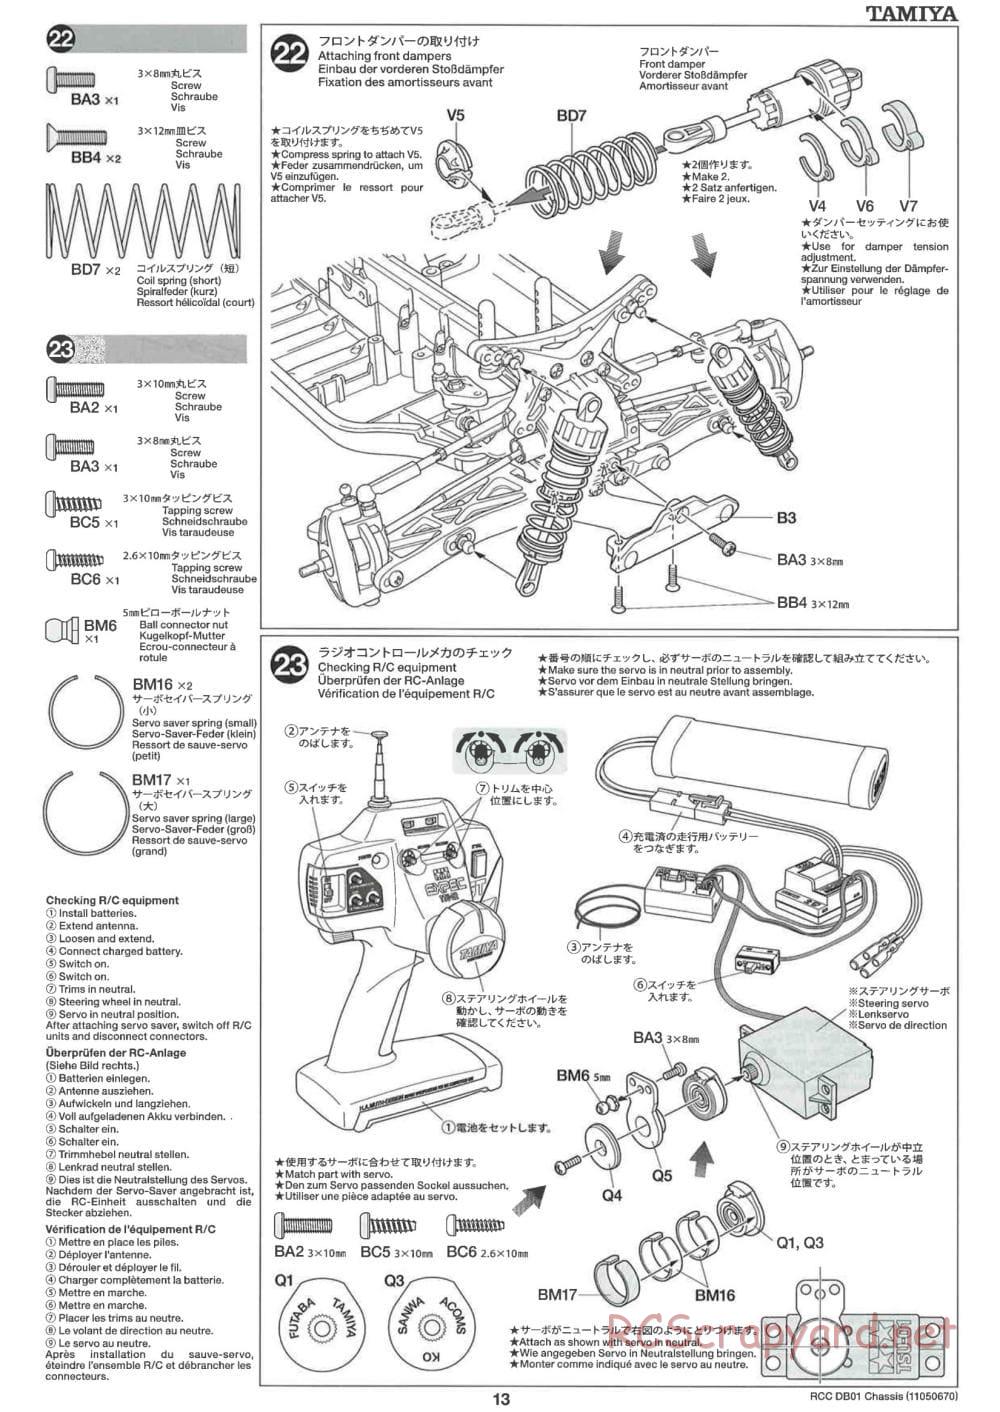 Tamiya - DB-01 Chassis - Manual - Page 13